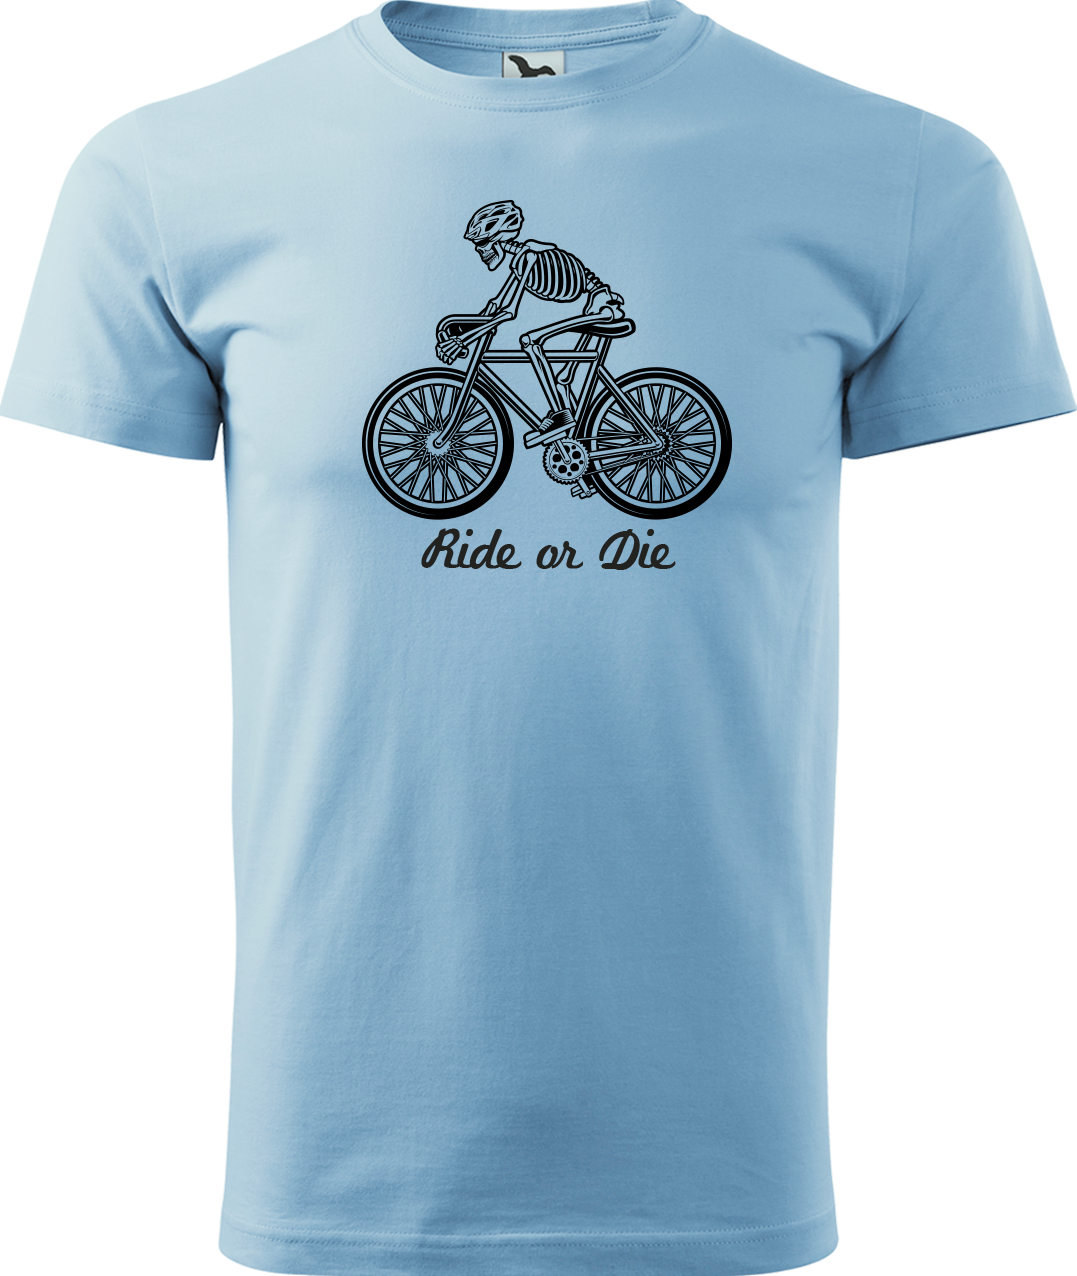 Pánské tričko pro cyklistu - Ride or Die Velikost: S, Barva: Nebesky modrá (15)